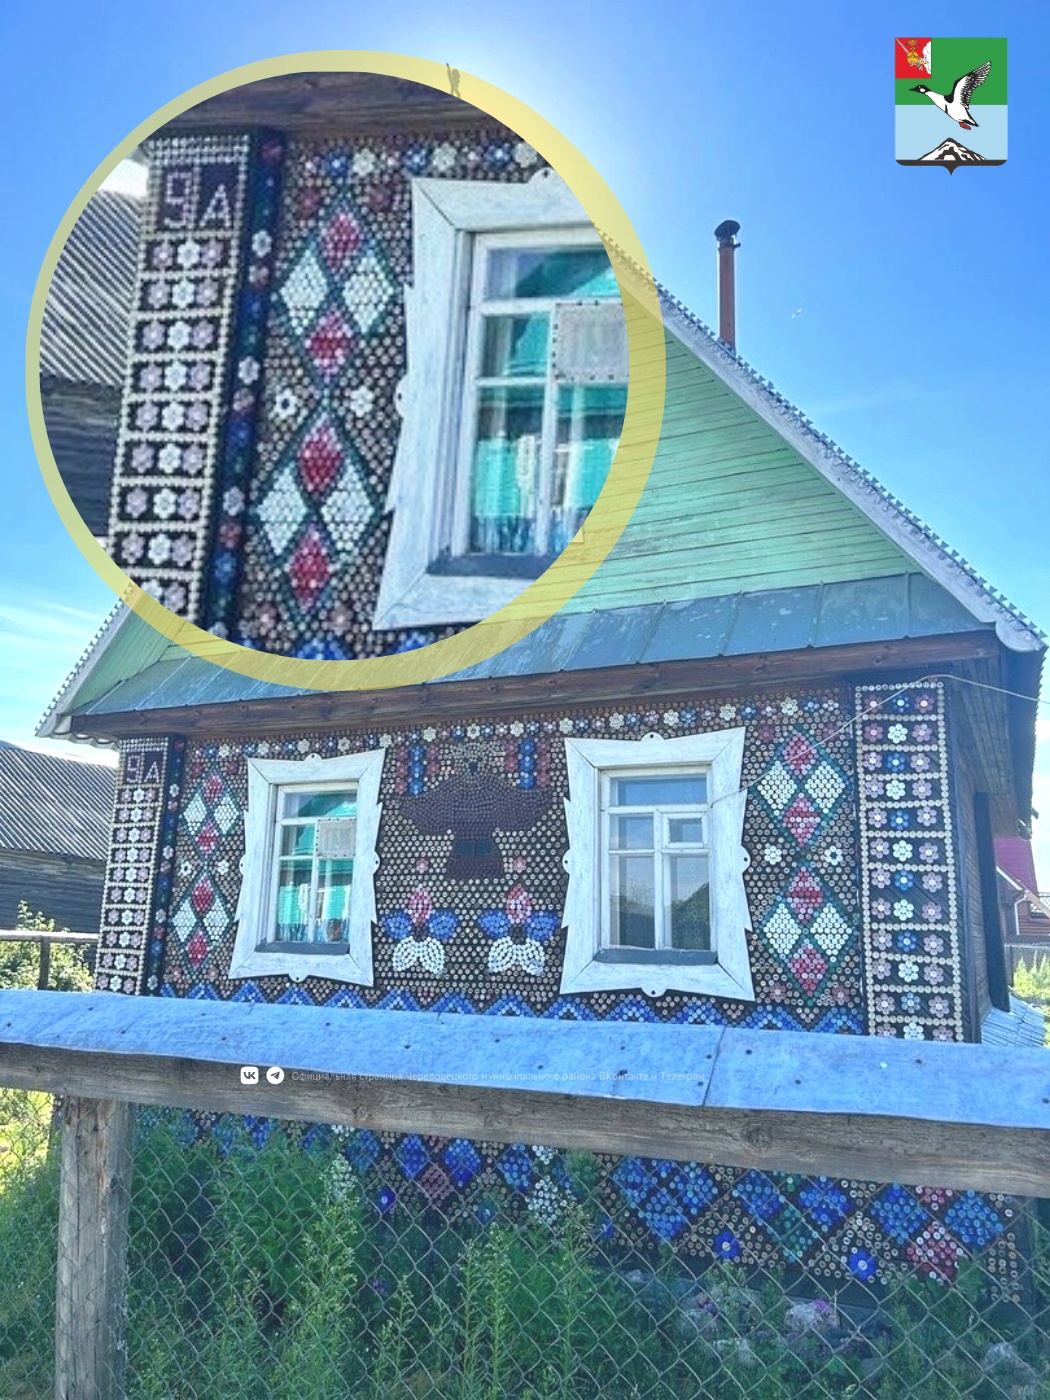 Наткнулись на необычный дом в деревне Браславль Уломского поселения – его стены были облицованы крышками от бутылок!.